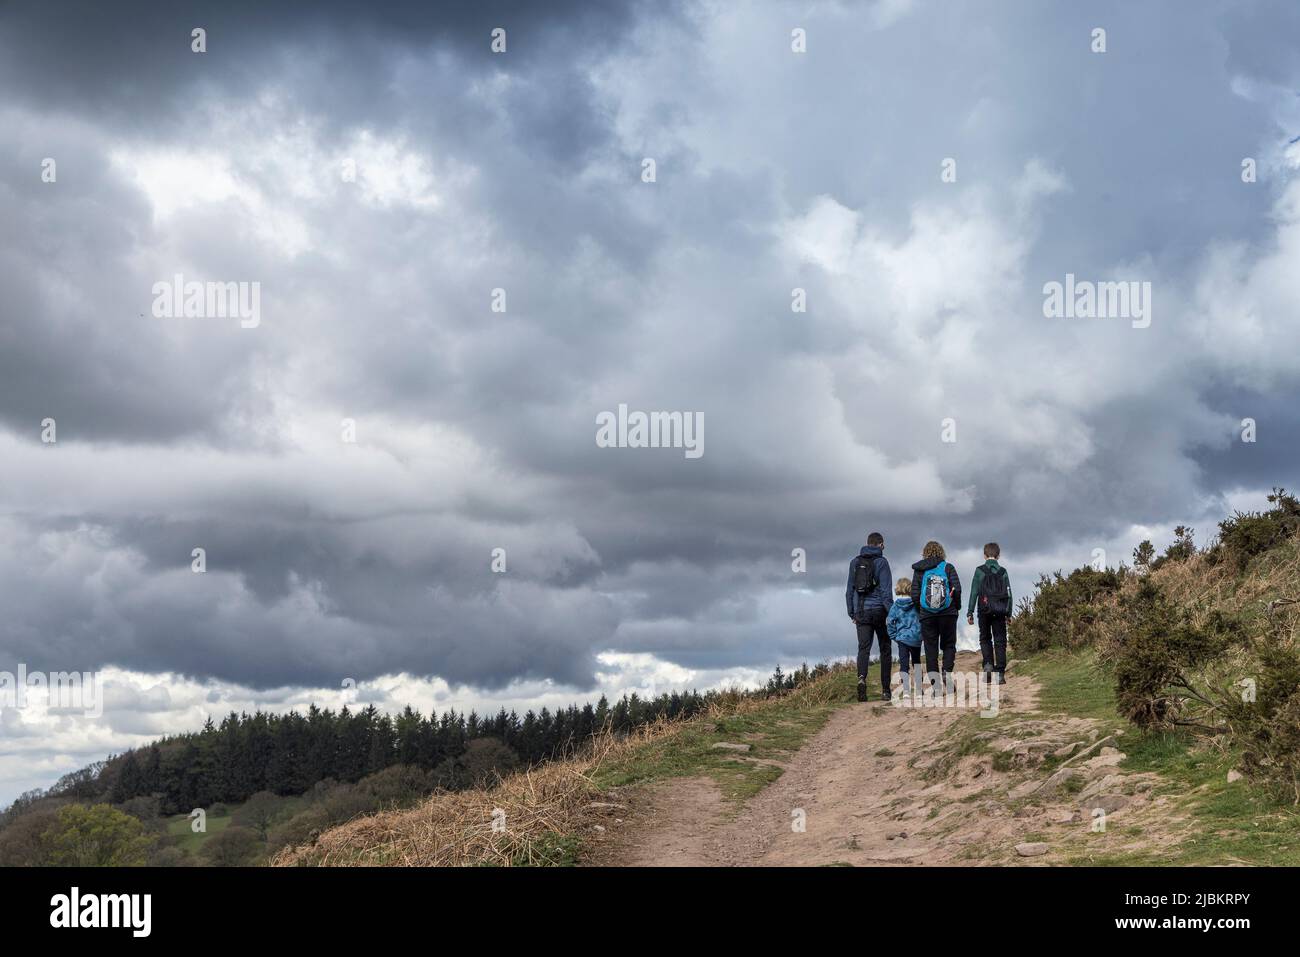 Groupe de deux adultes et enfants marchant sur une piste le pain de sucre par temps nuageux, Abergavenny, pays de Galles, Royaume-Uni Banque D'Images